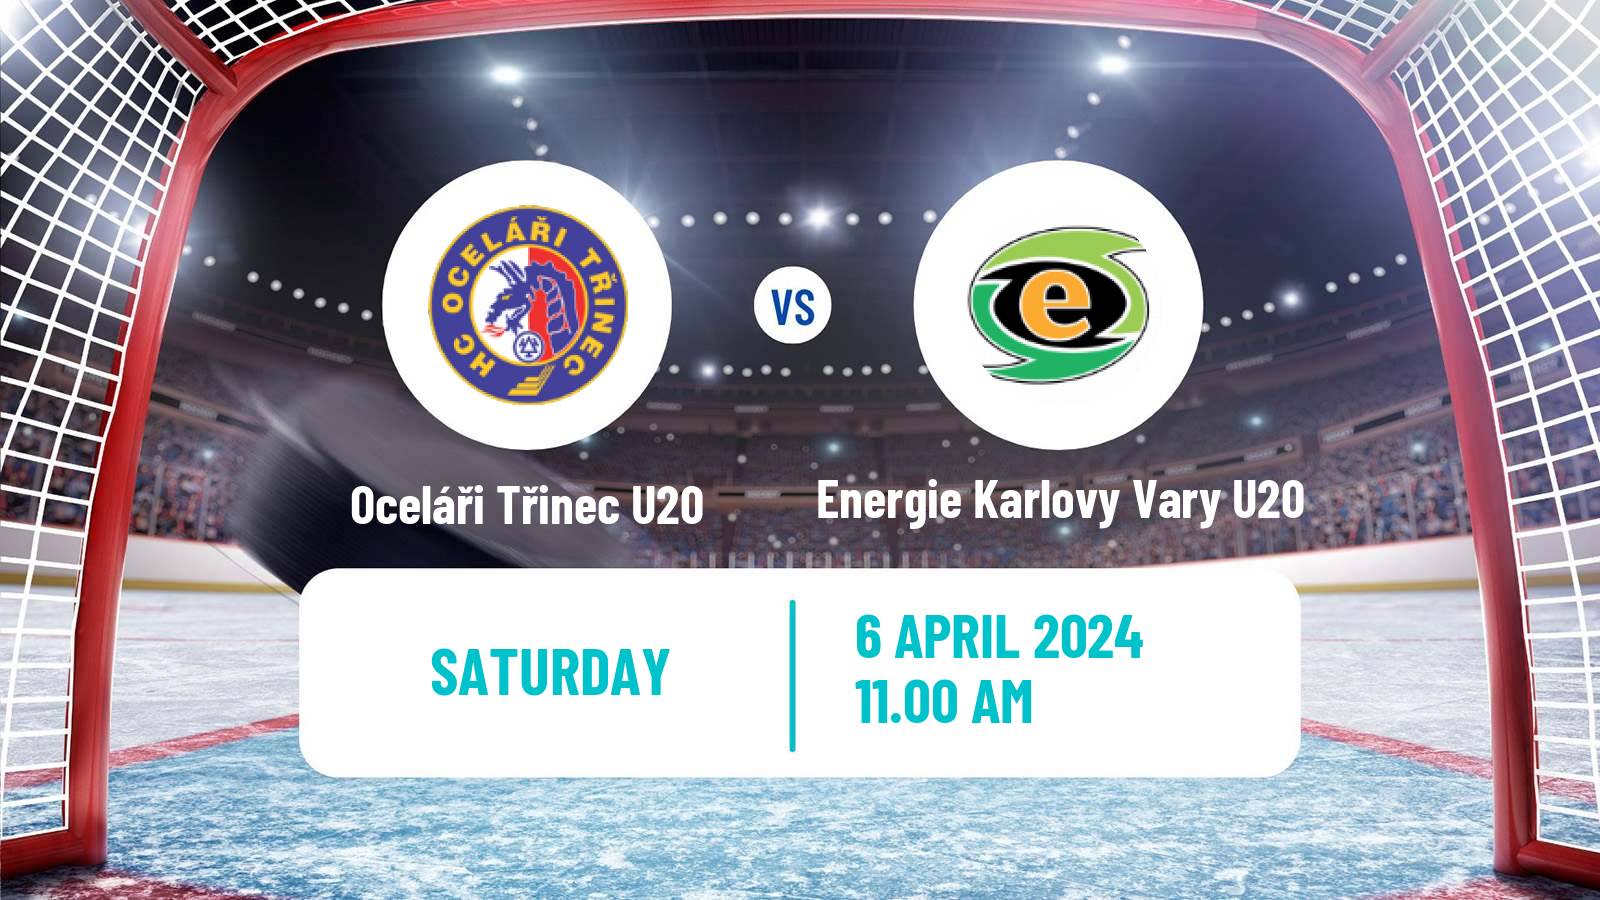 Hockey Czech ELJ Oceláři Třinec U20 - Energie Karlovy Vary U20